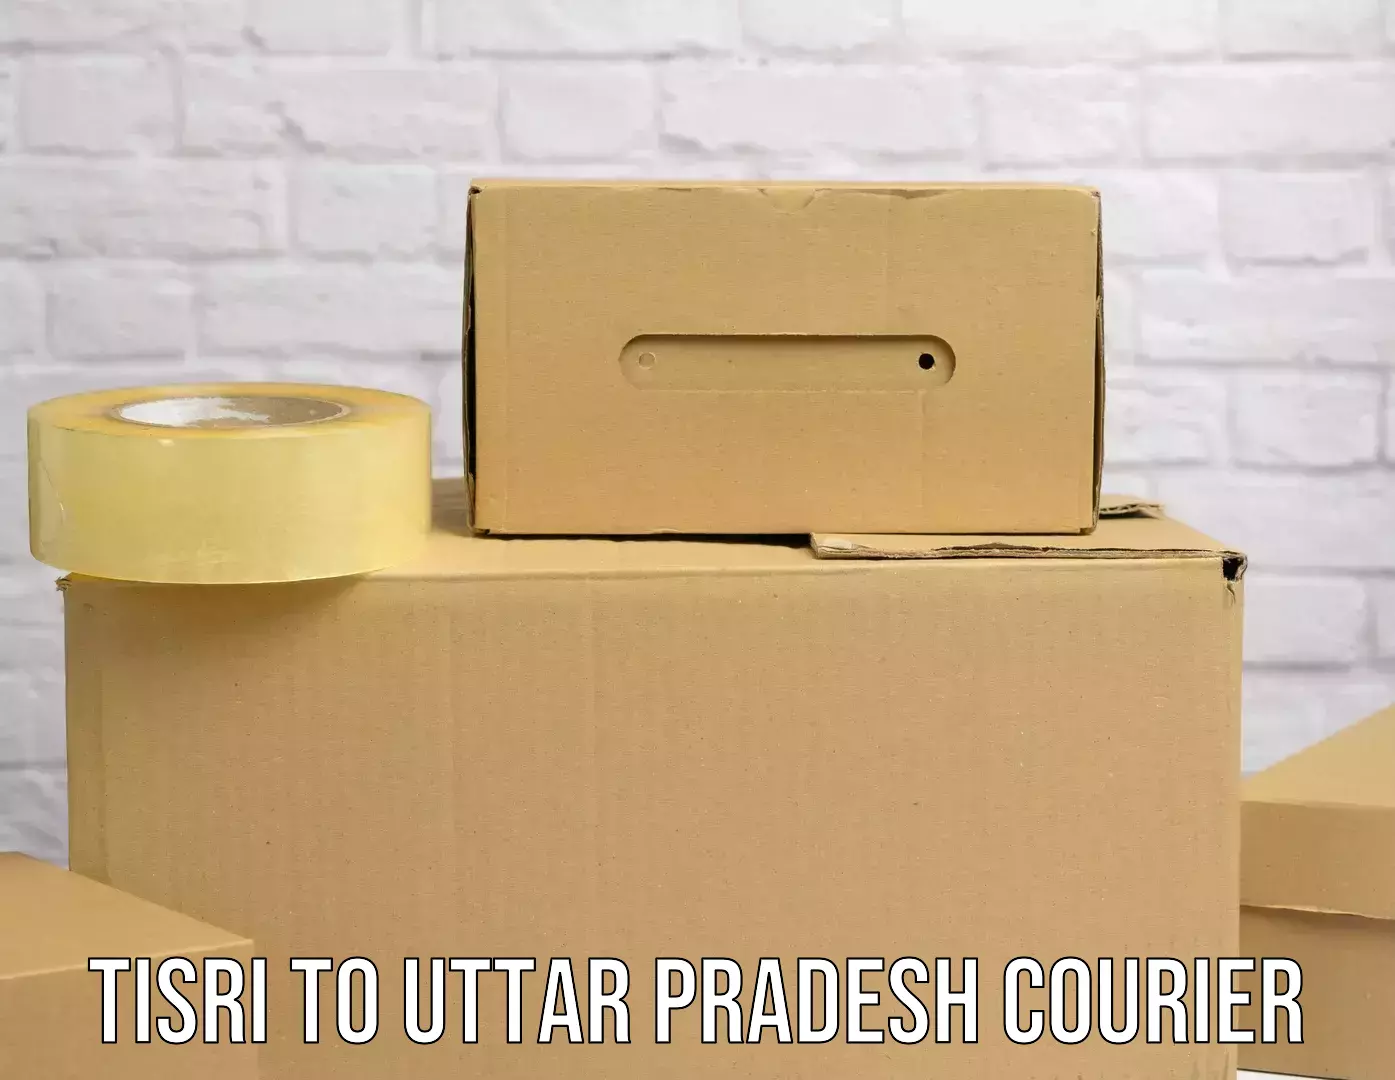 Customer-centric shipping Tisri to Anandnagar